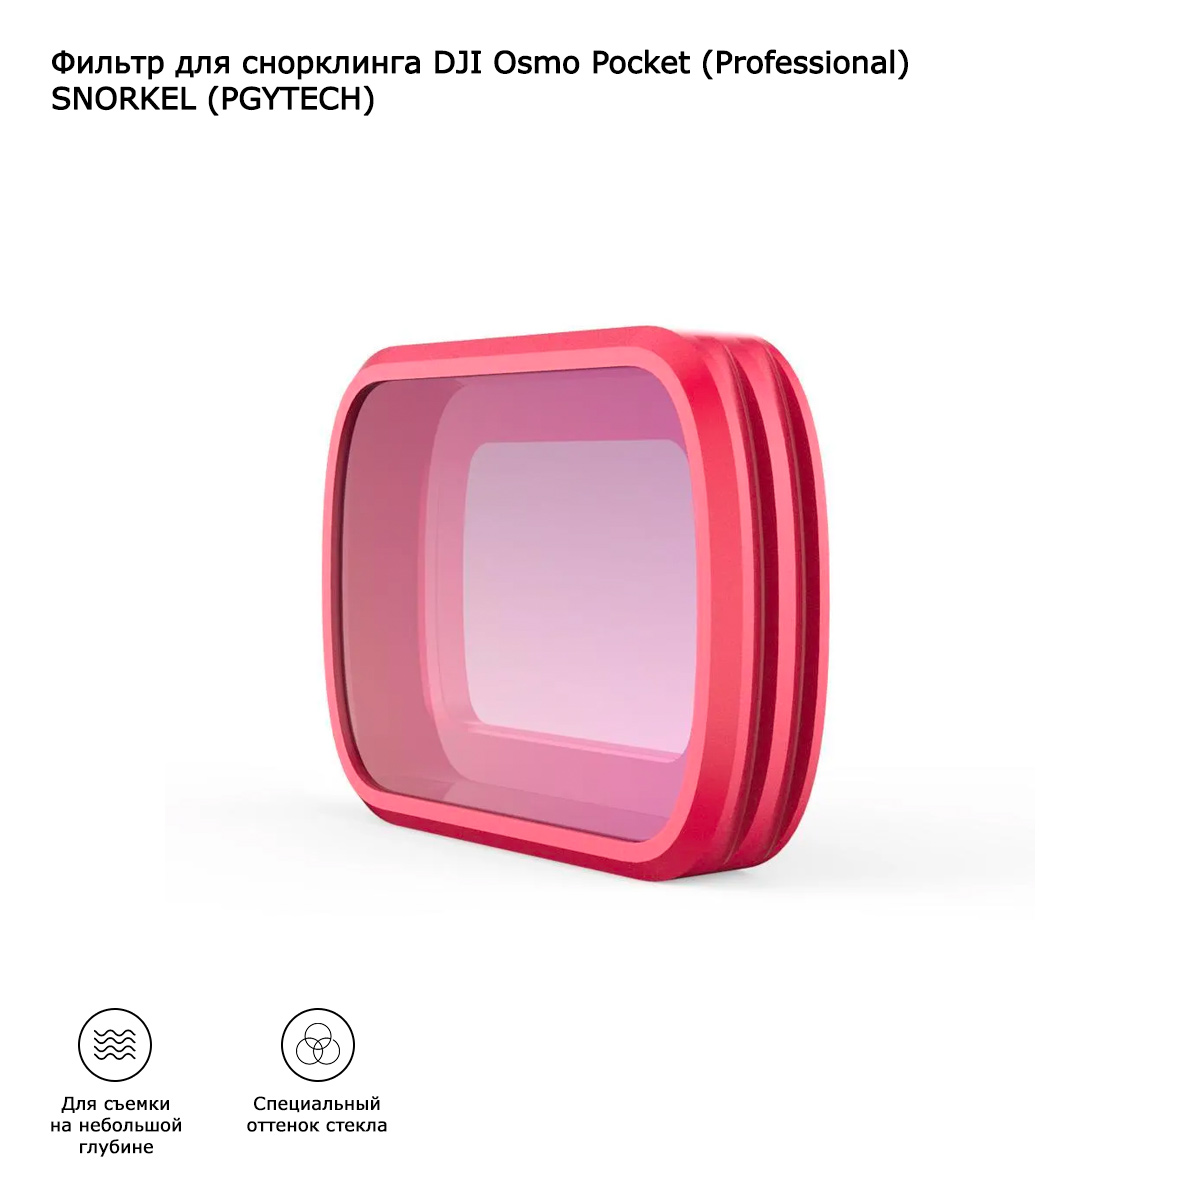 Фильтр для снорклинга DJI Osmo Pocket (Professional) SNORKEL (PGYTECH) (P-18C-016)